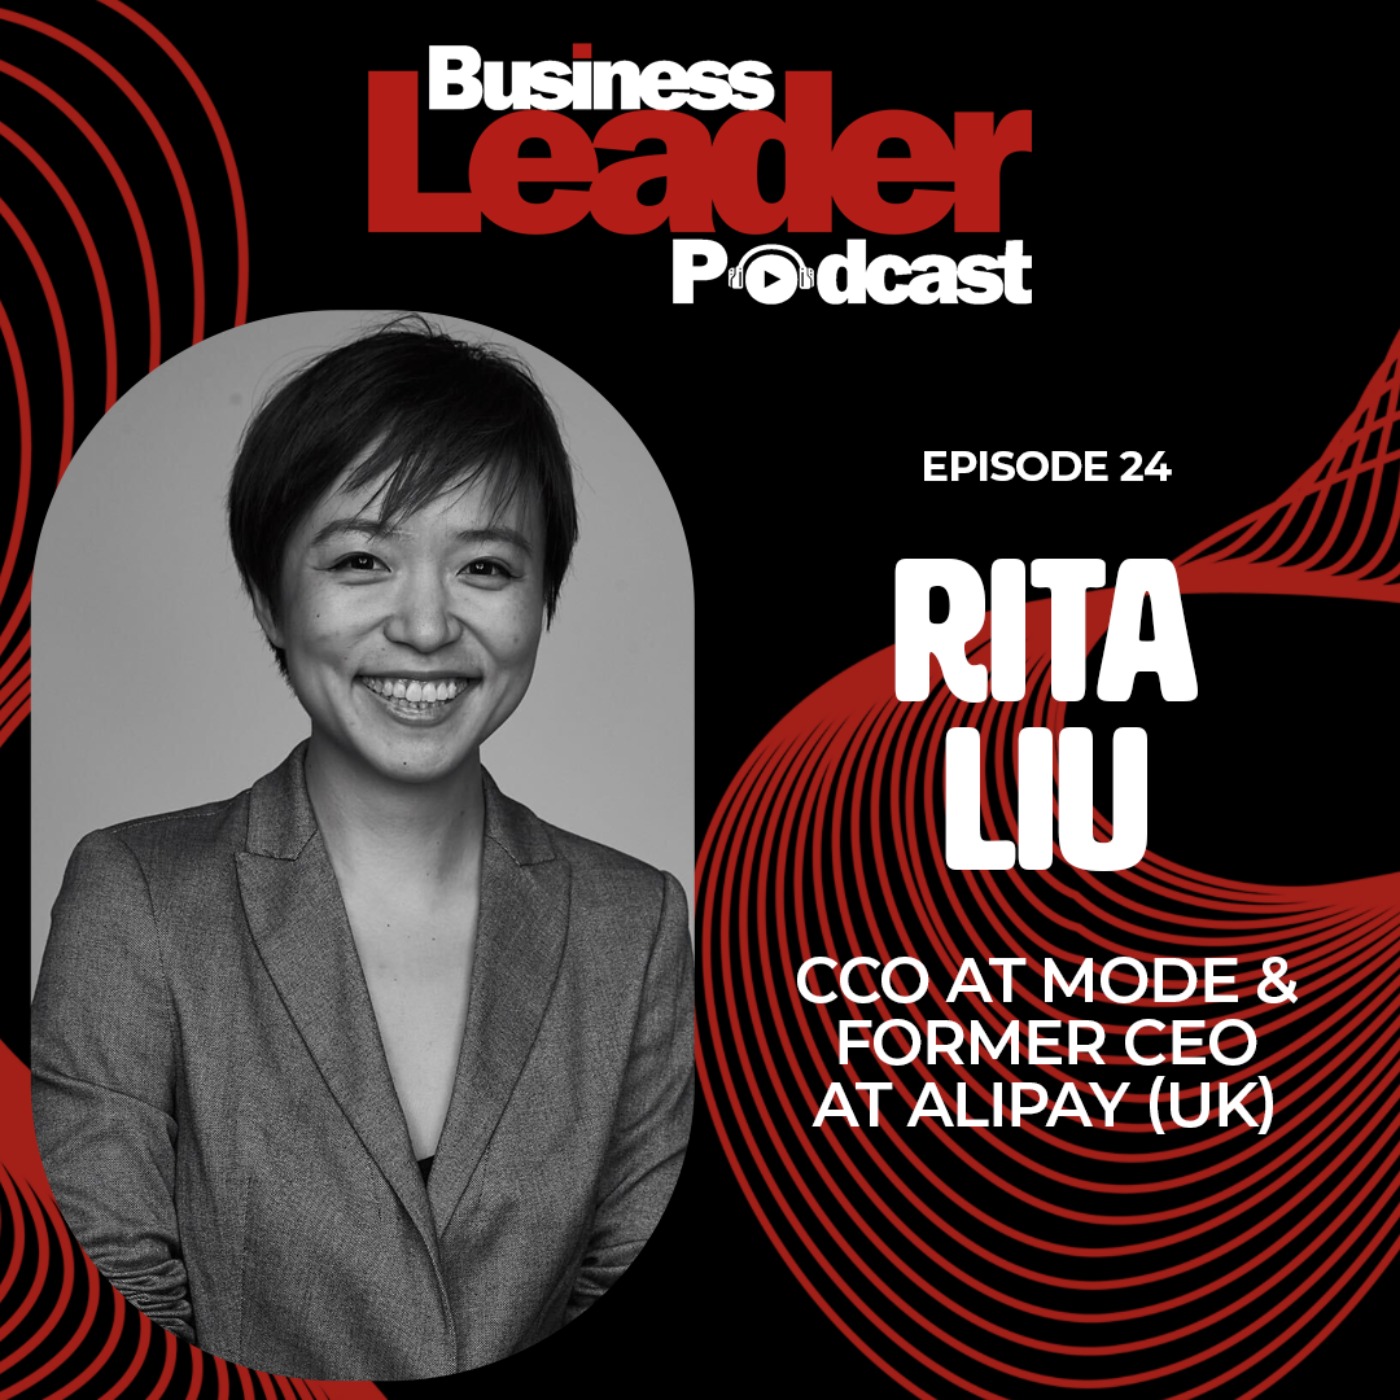 Rita Liu: CCO at Mode & former CEO at Alipay (UK)